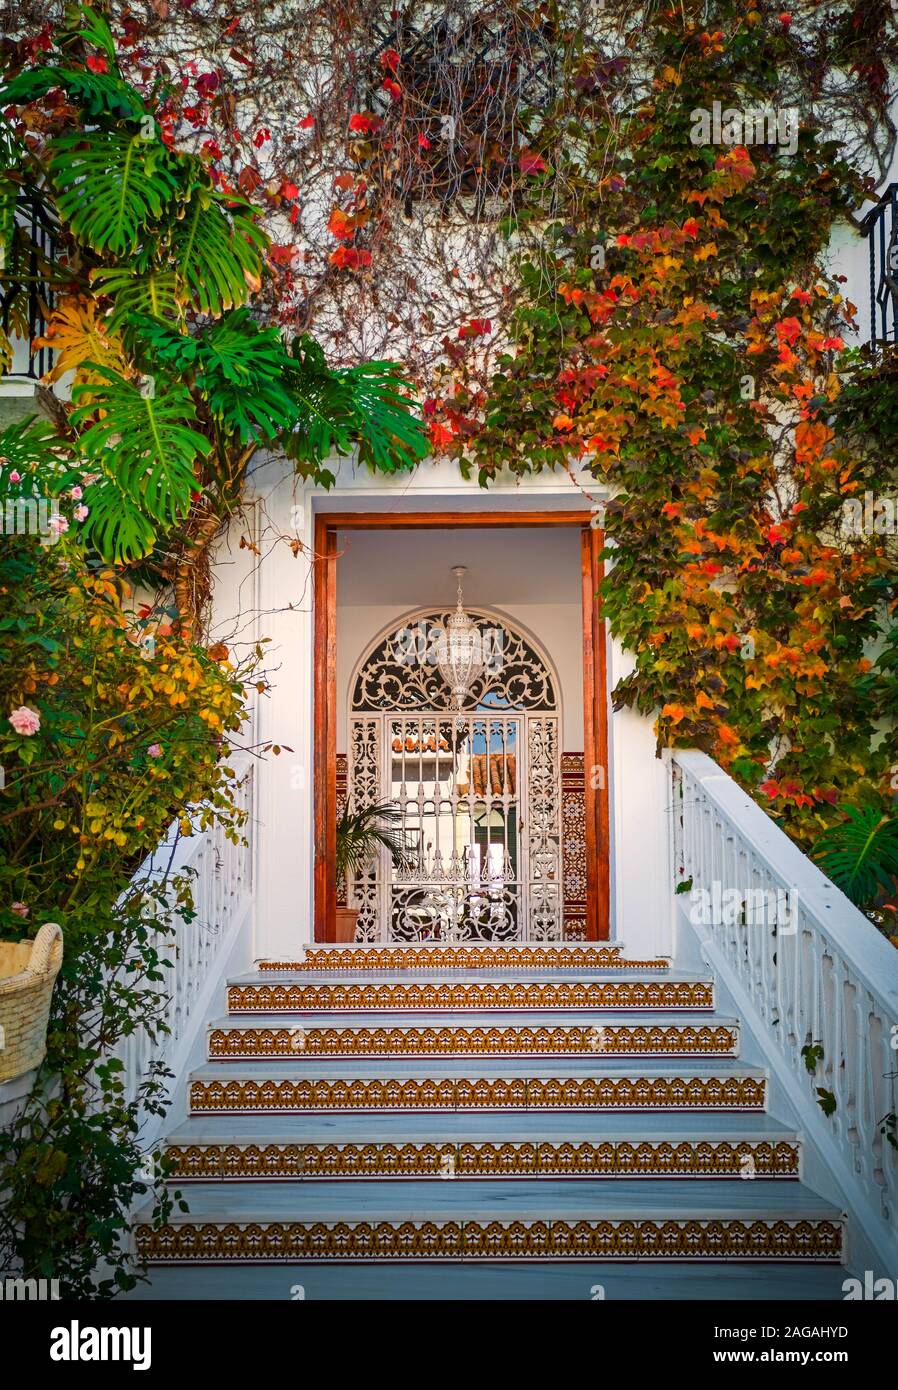 Una elegante entrada a una casa en Nerja, con teja árabe sobre los elevadores de paso, todos enmarcados por una mezcla de plantas trepadoras. La provincia de Málaga, Andalucía, España Foto de stock